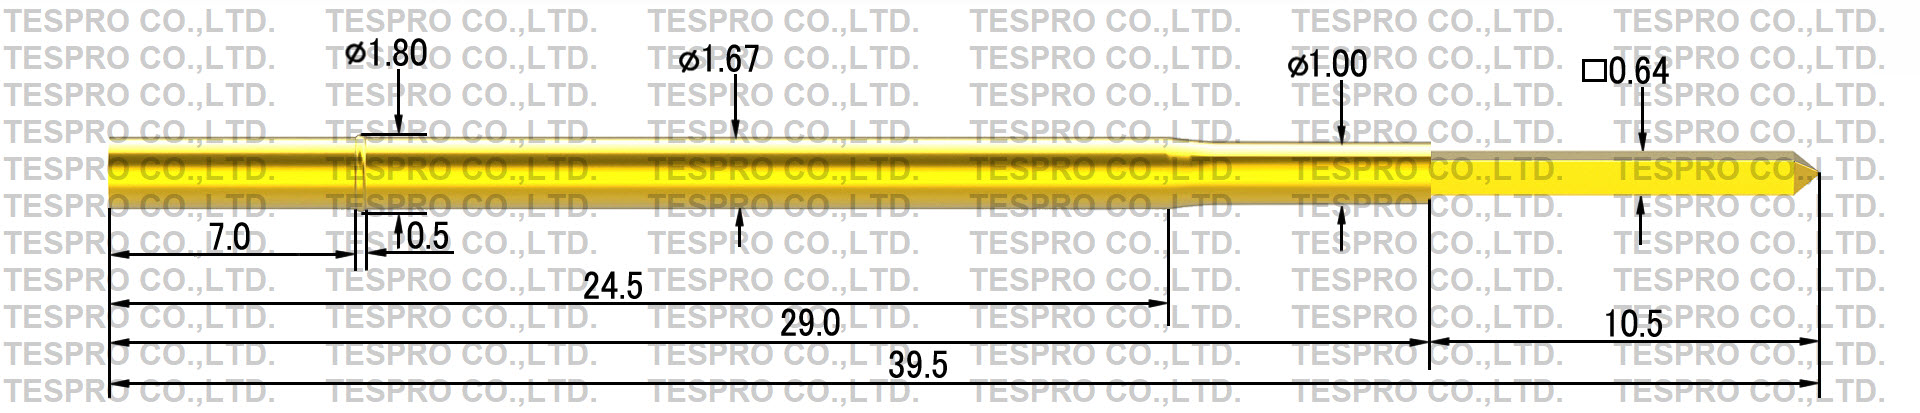 http://tespro-jp.com/product/tr137s3_tespro.jpg